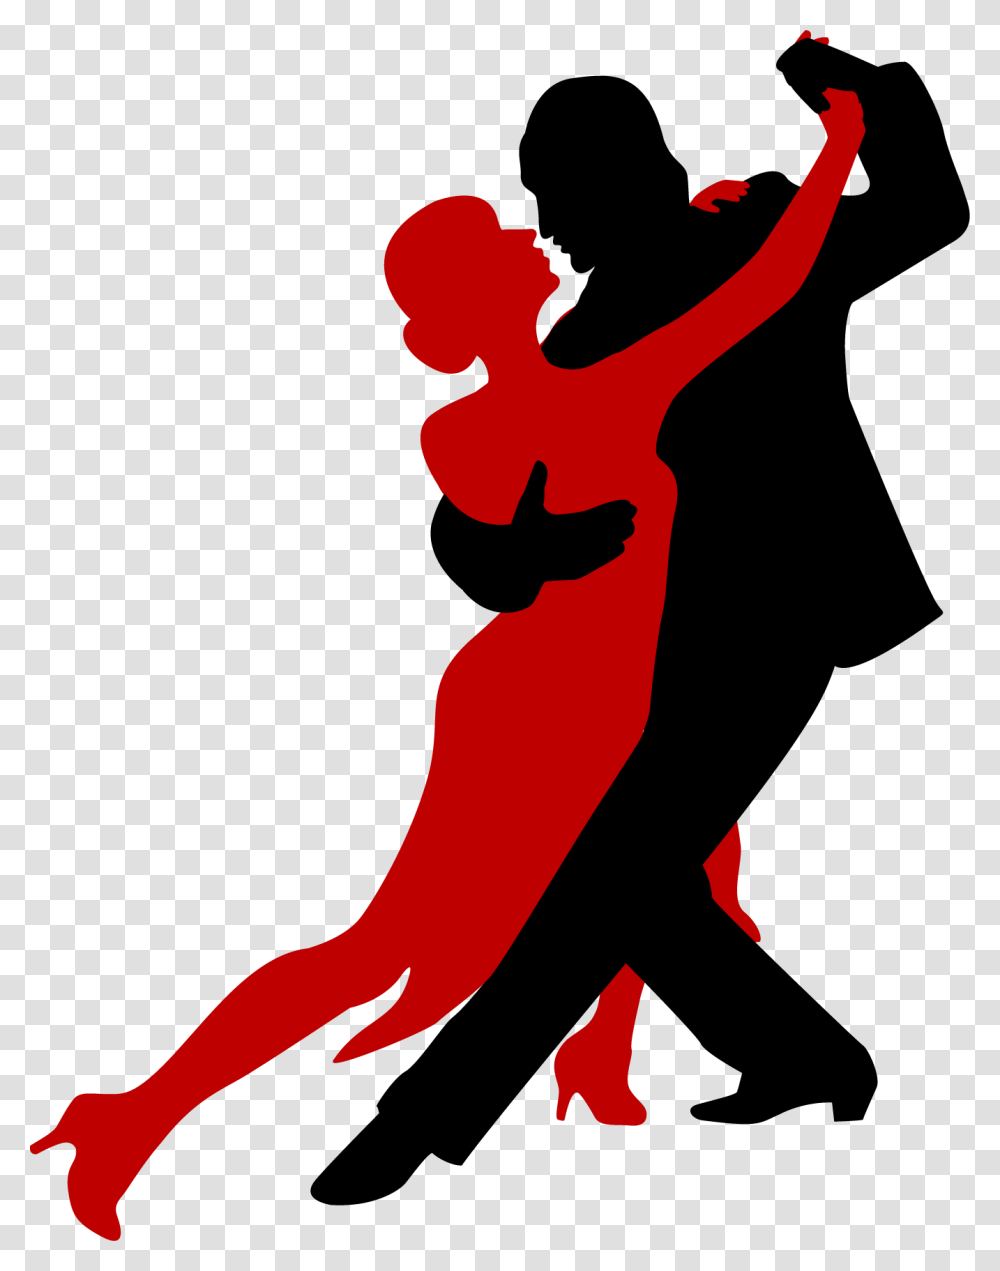 Силуэт танцующей пары